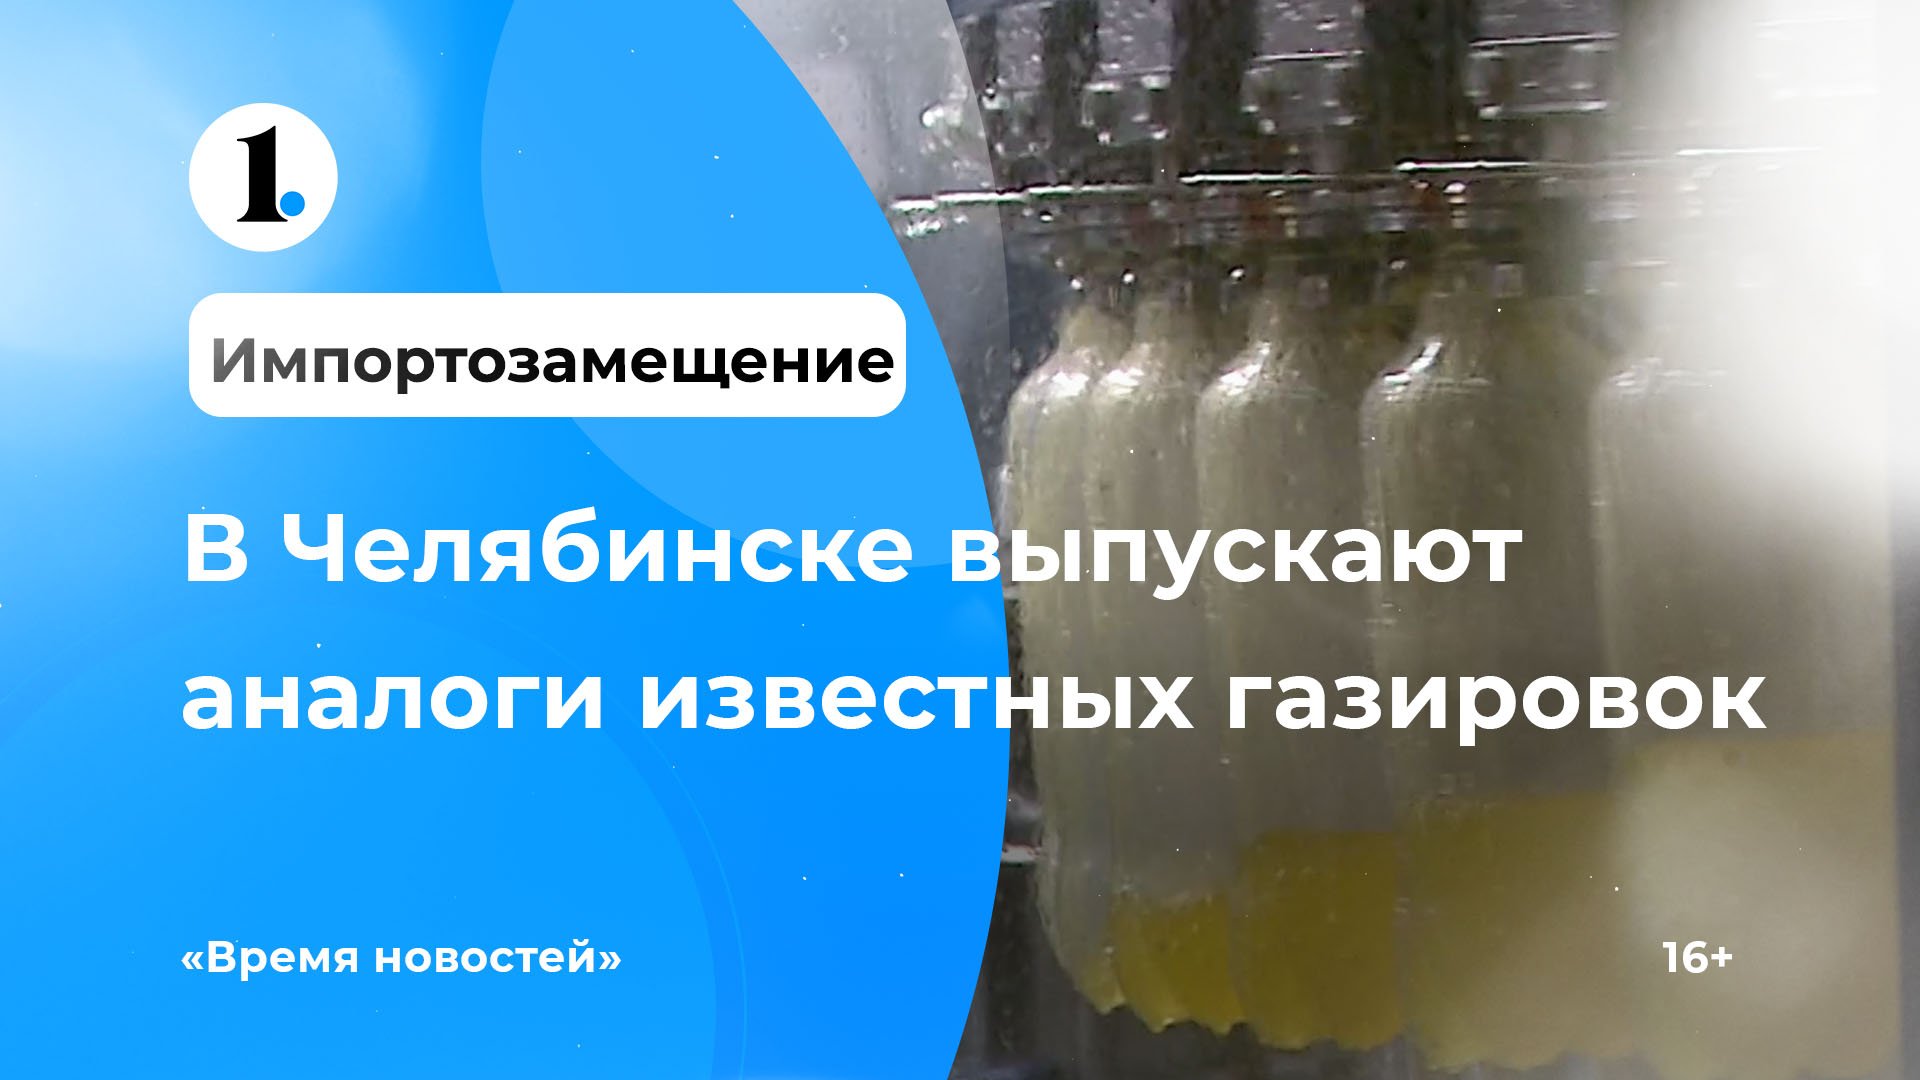 В Челябинске выпускают аналог известных газированных напитков